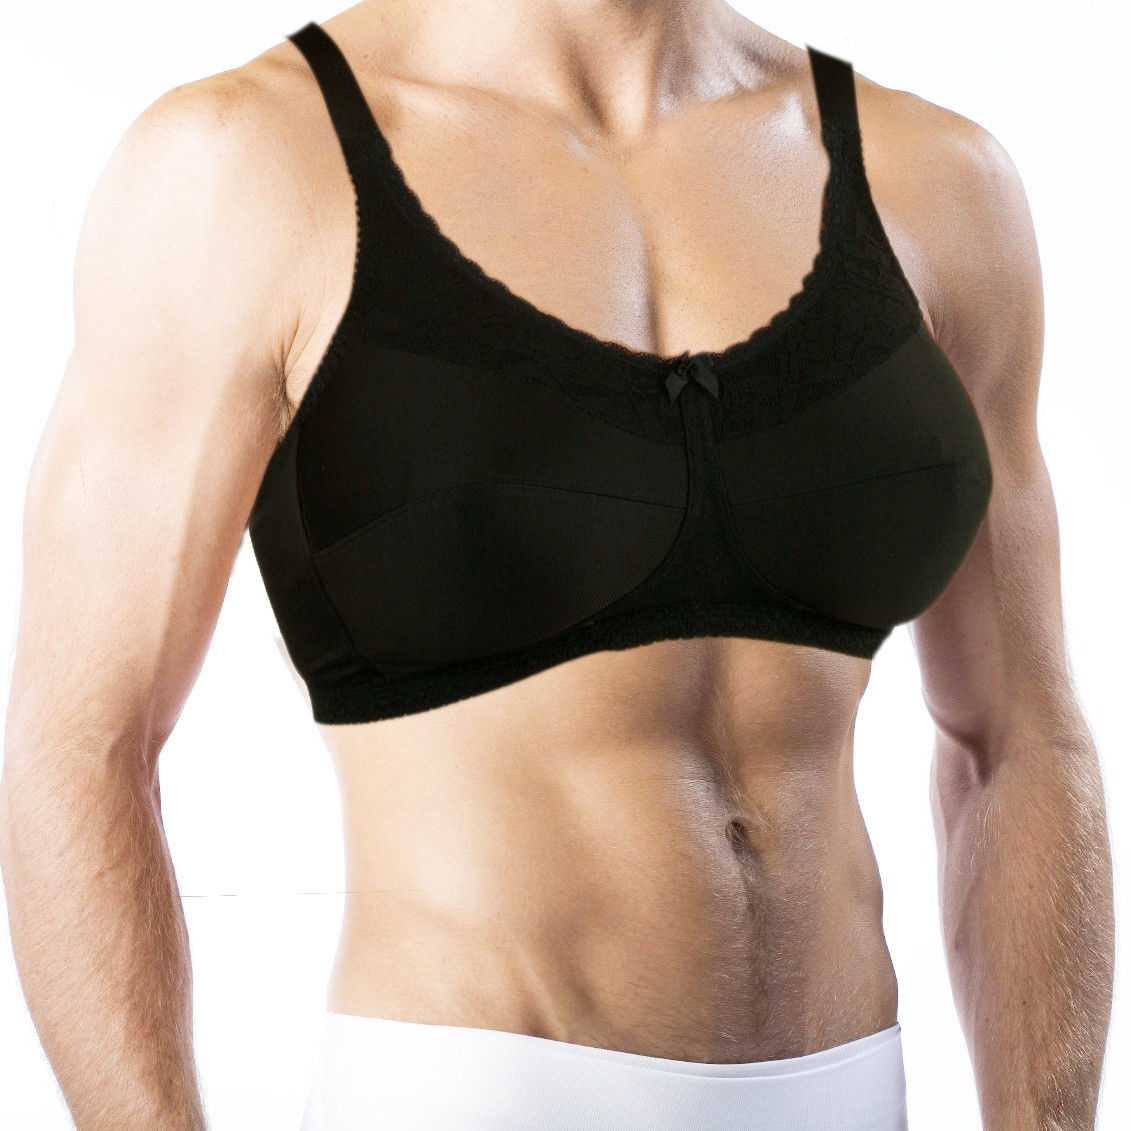 Bra For Men. Holds Silicone Breast Forms! Crossdressing, Transgender #770 - $39.99